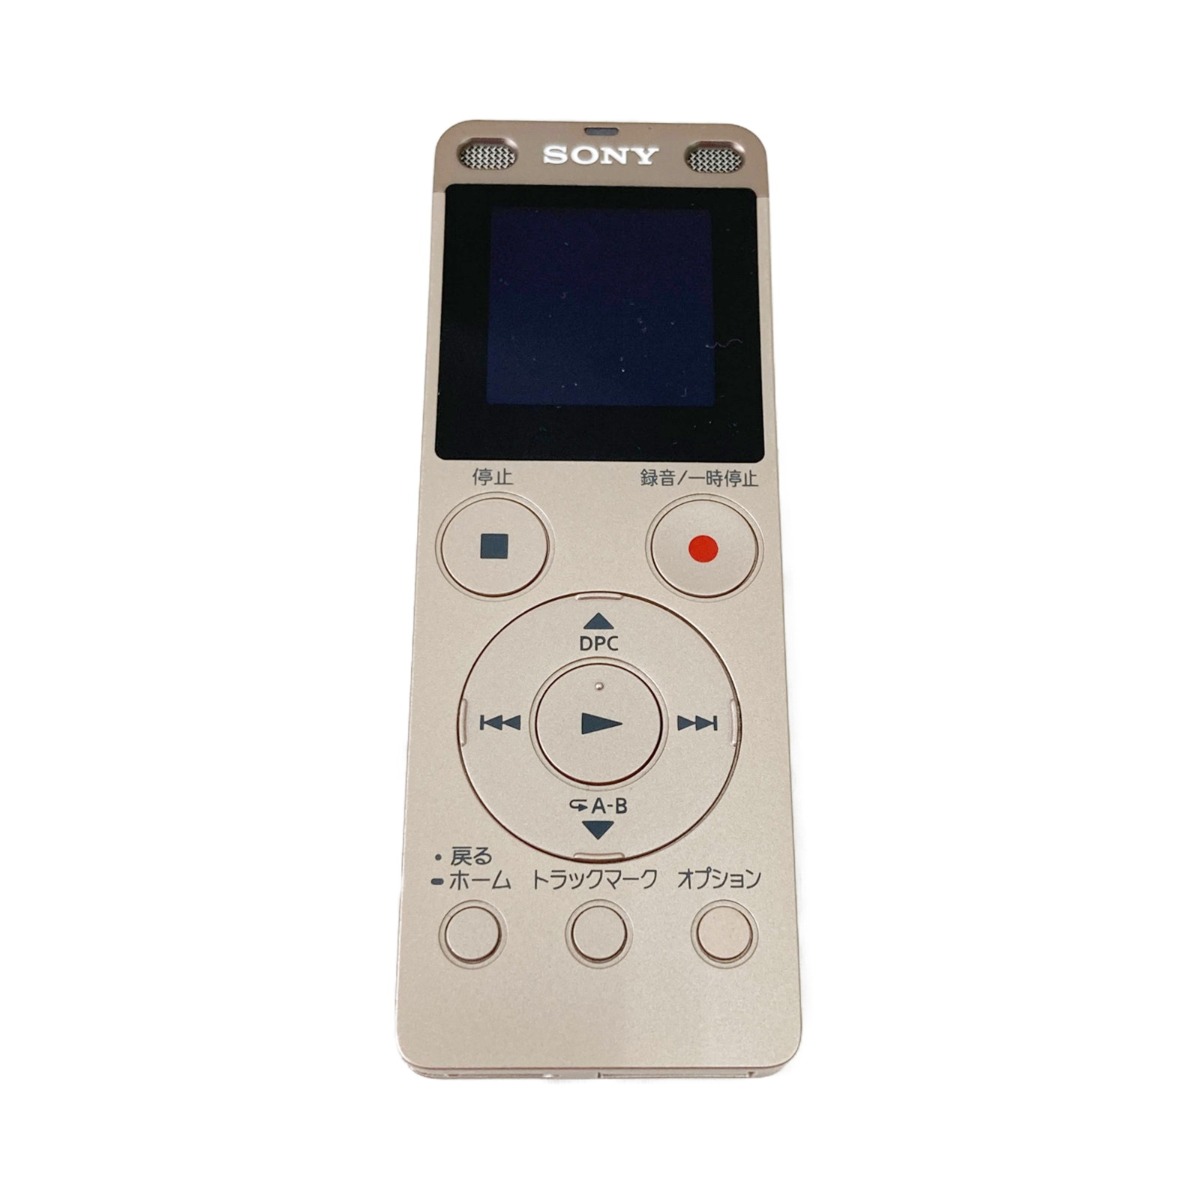 〇〇【中古】SONY ソニー ステレオICレコーダー FMチューナー付 4GB ICD-UX560F Bランク